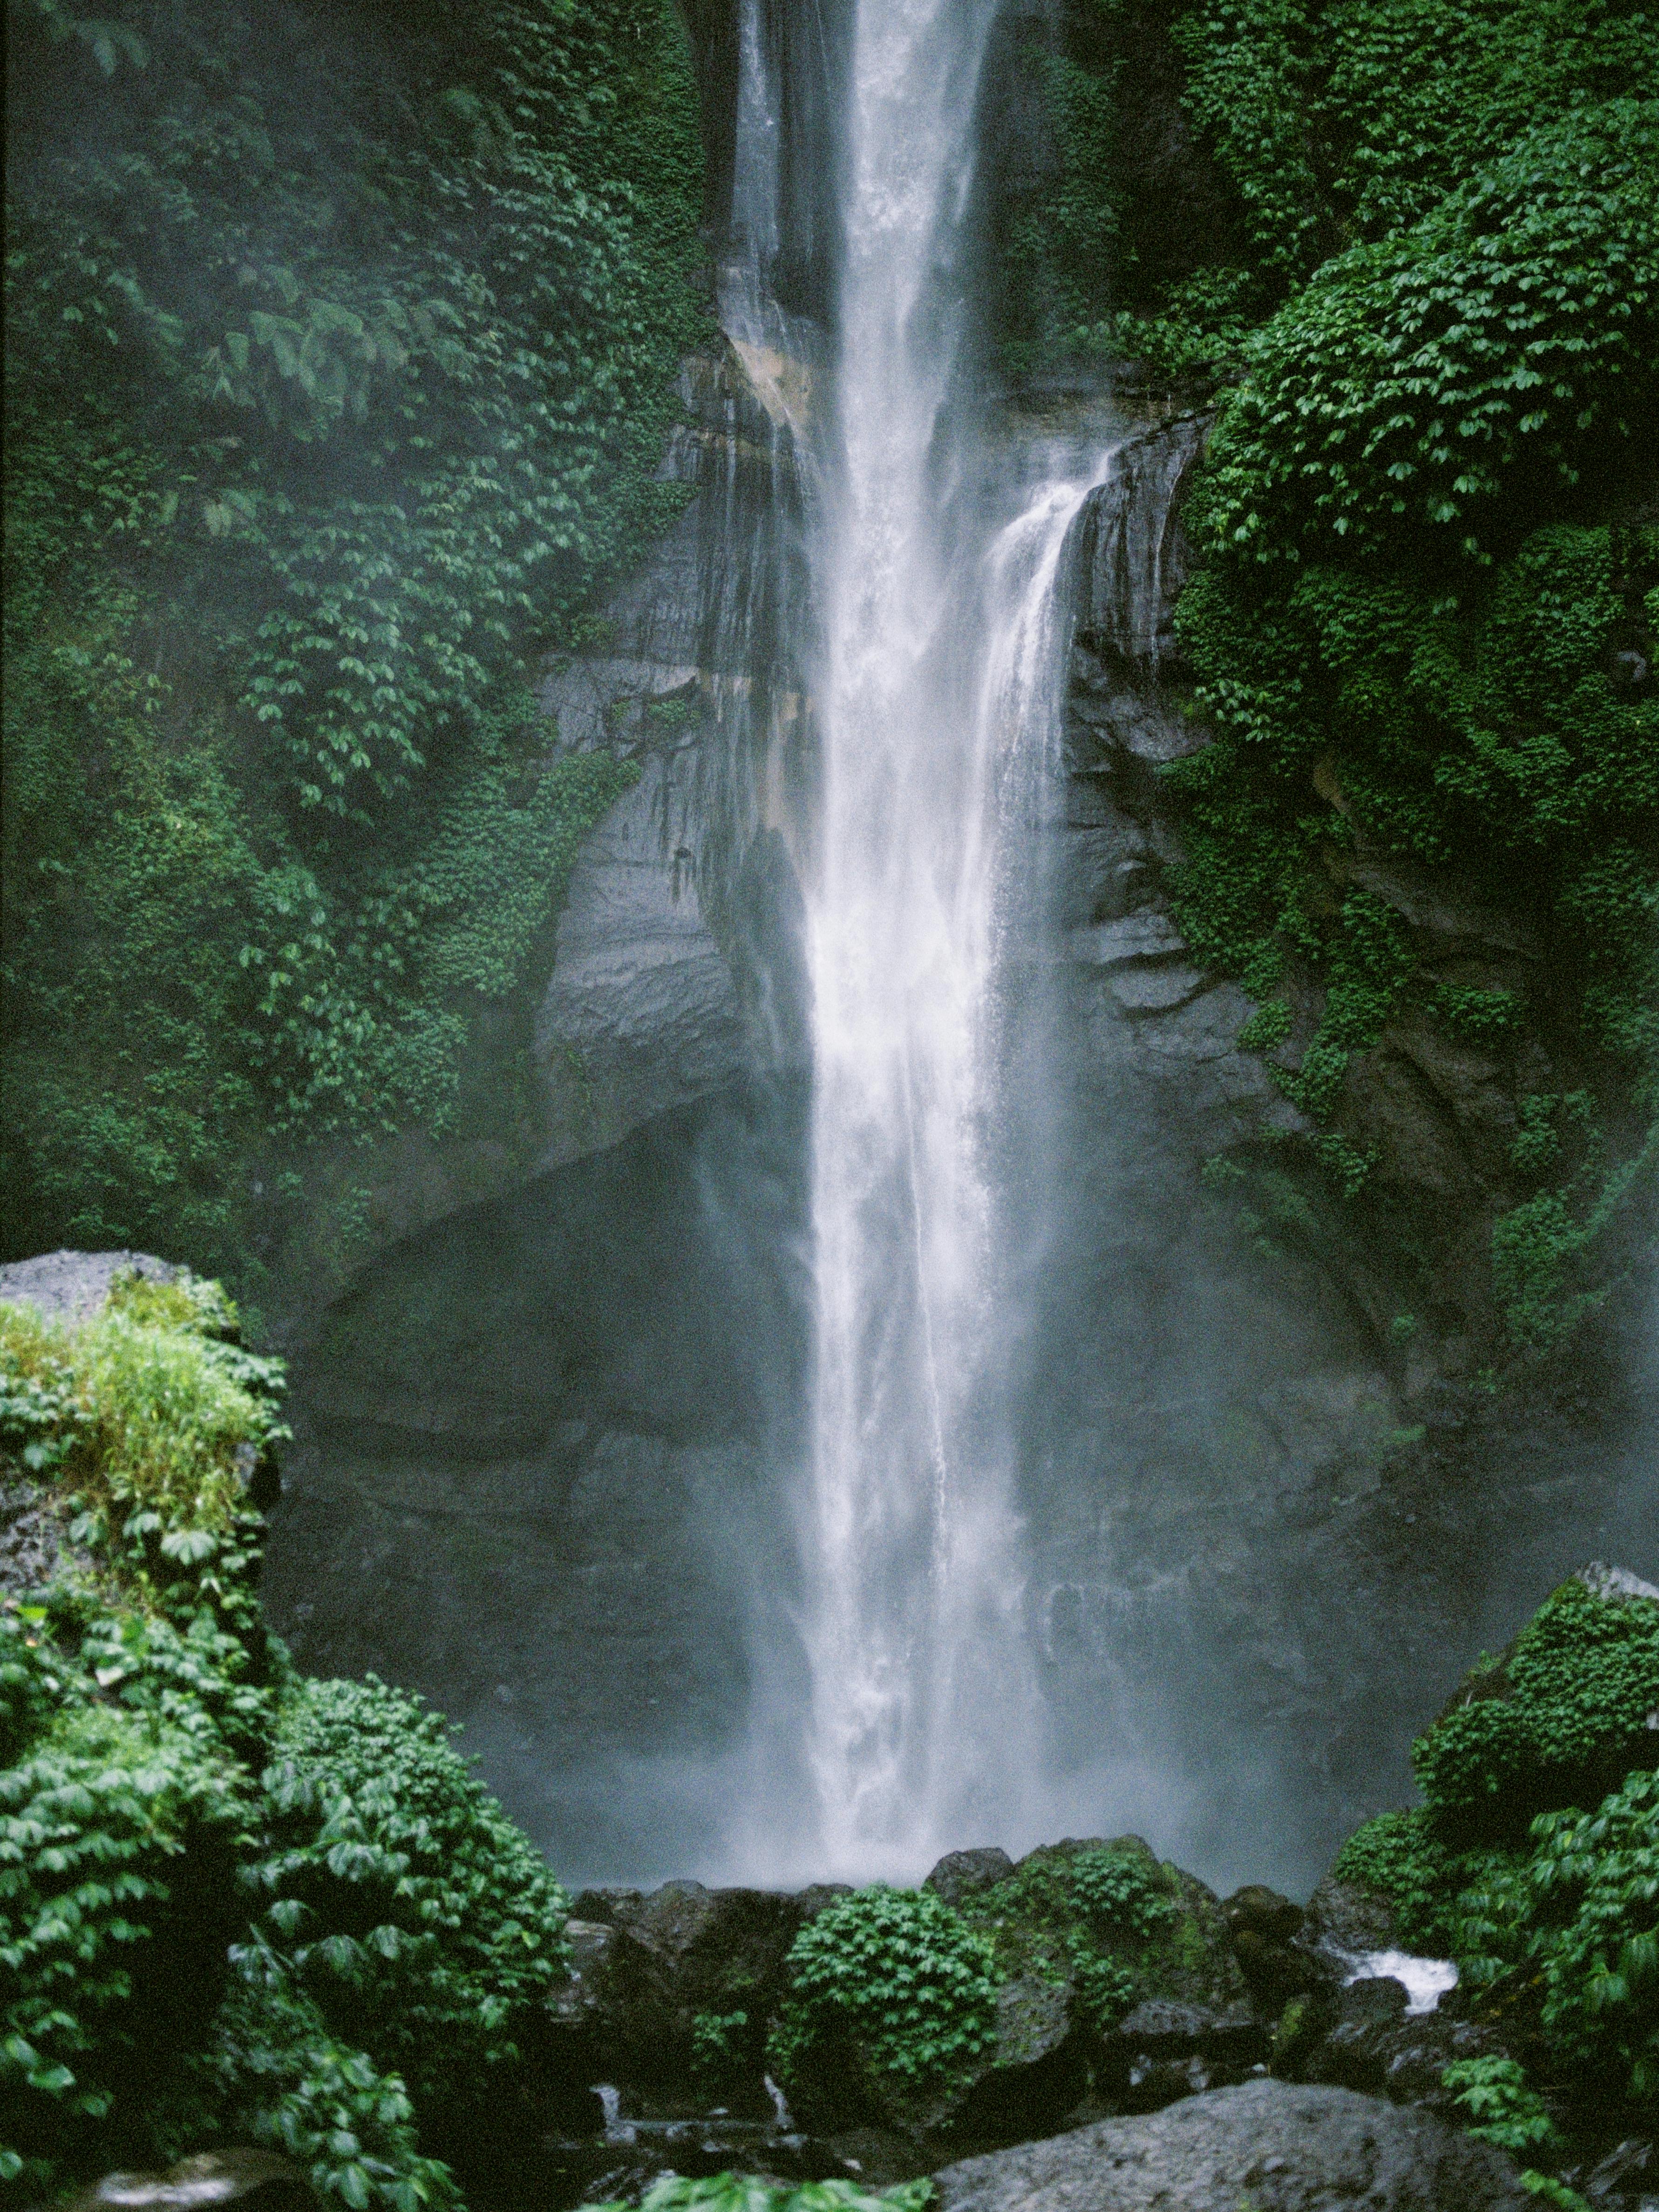 waterfall and lush foliage